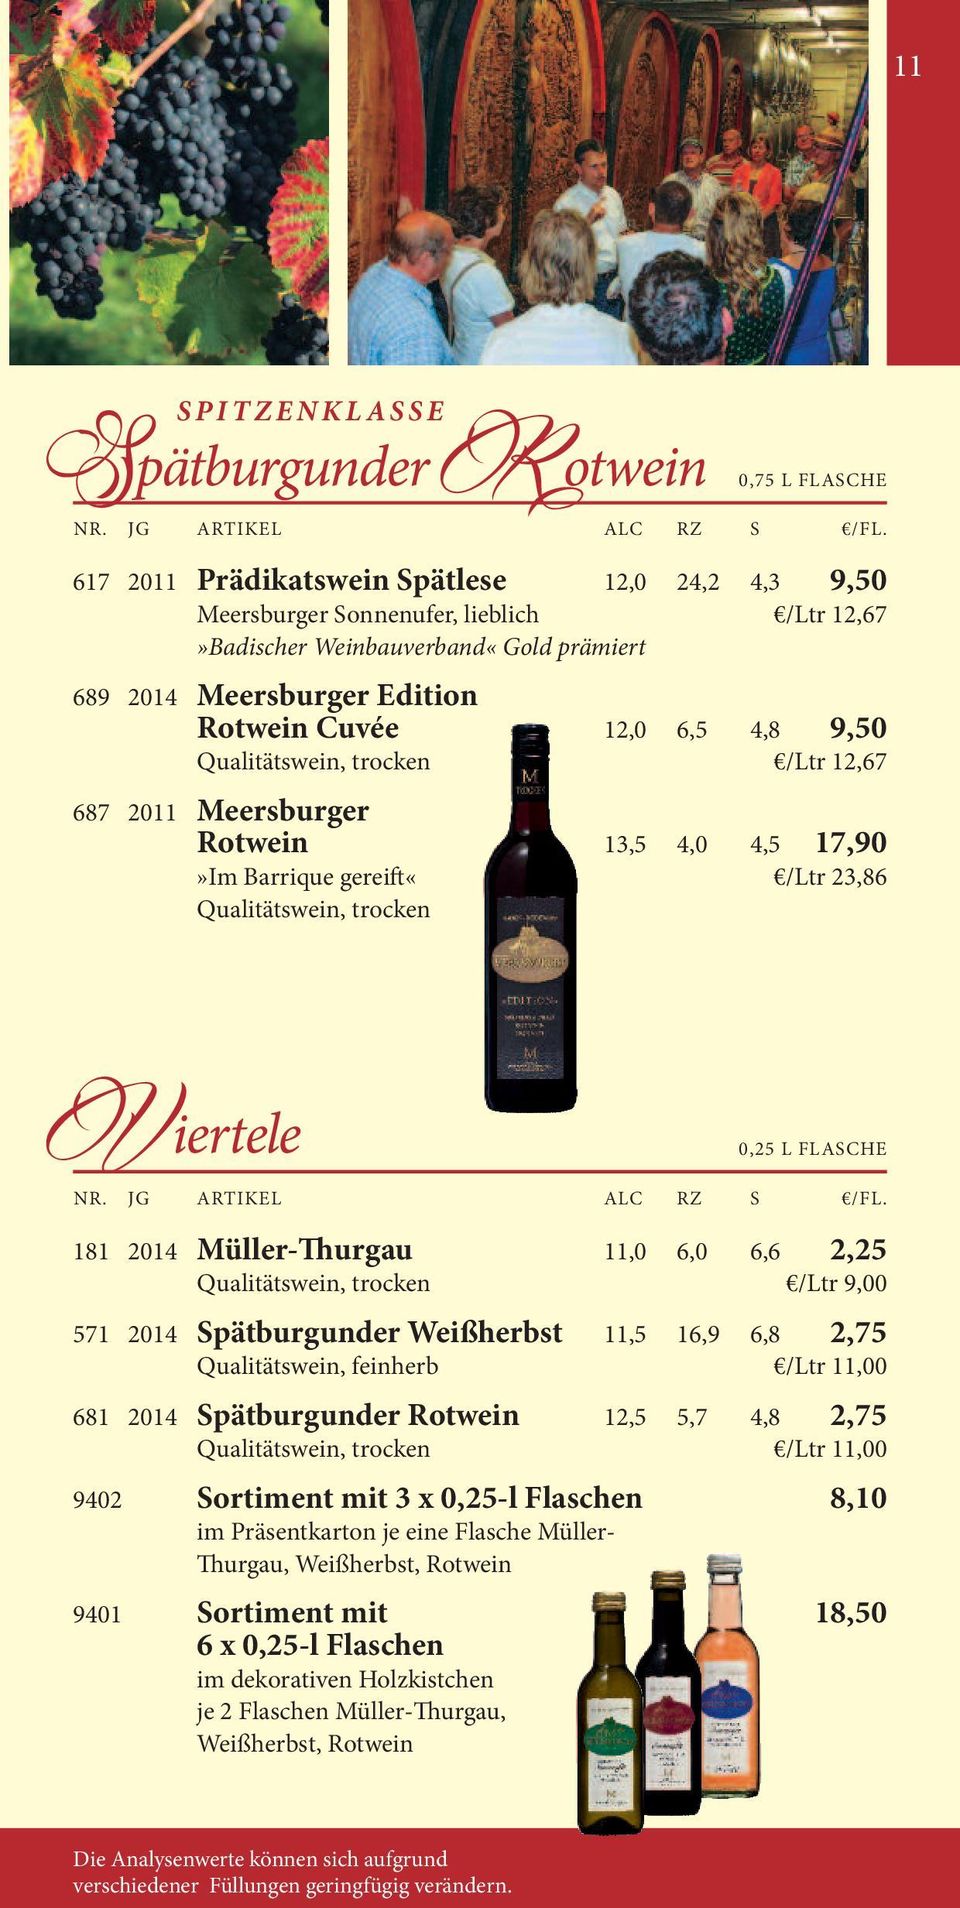 0,25 l FlAsCHe 181 2014 Müller- urgau 11,0 6,0 6,6 2,25 Qualitätswein, trocken /ltr 9,00 571 2014 Spätburgunder Weißherbst 11,5 16,9 6,8 2,75 Qualitätswein, feinherb /ltr 11,00 681 2014 Spätburgunder